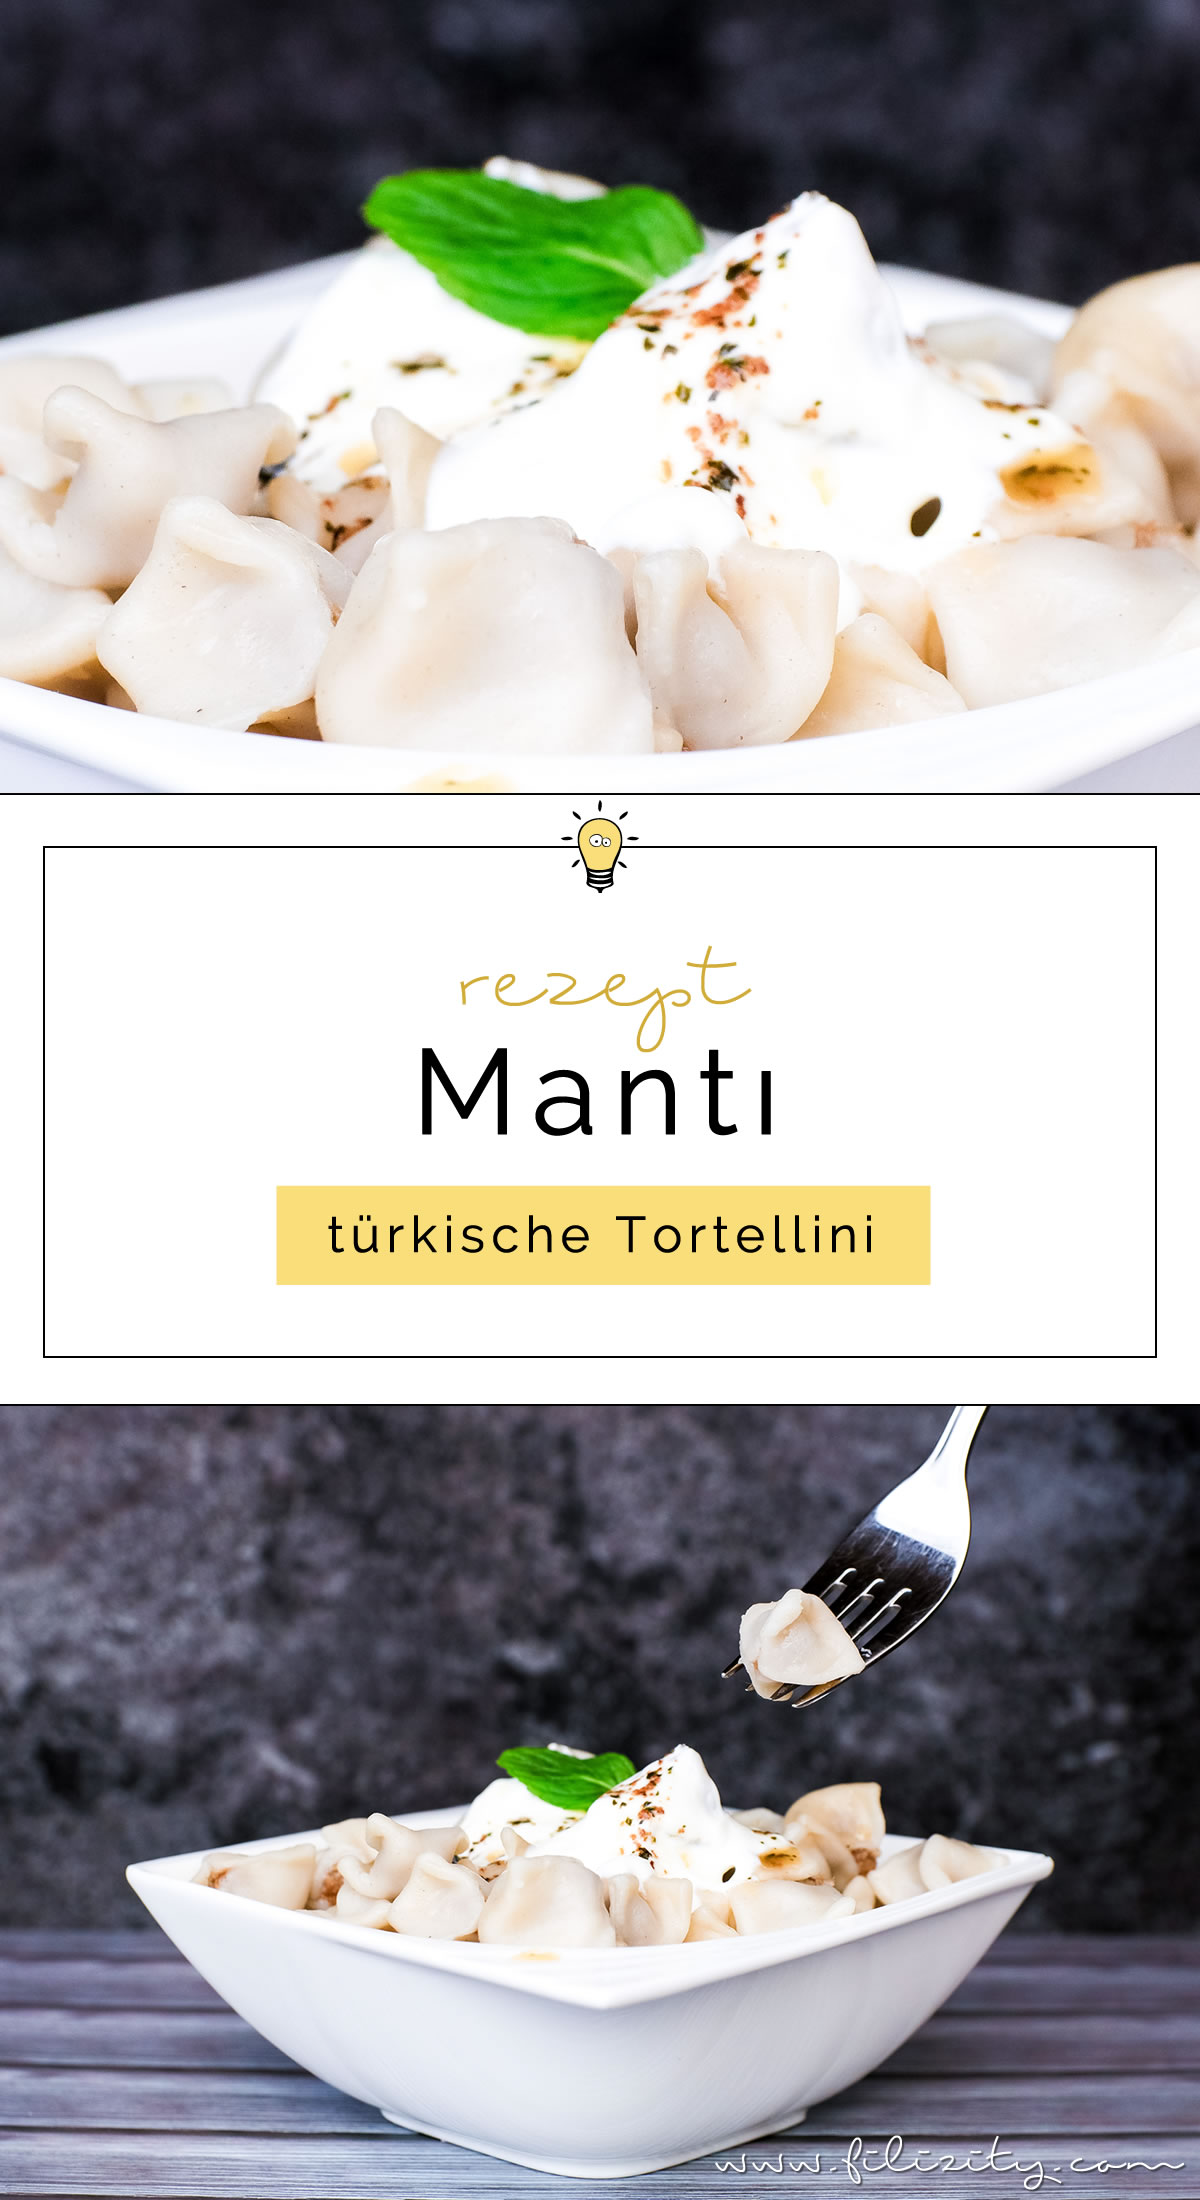 Rezept für Manti - Türkische Tortellini mit Knoblauch-Joghurtsoße und Paprikabutter | Filizity.com | Food-Blog aus dem Rheinland #tortellini #ravioli #manti